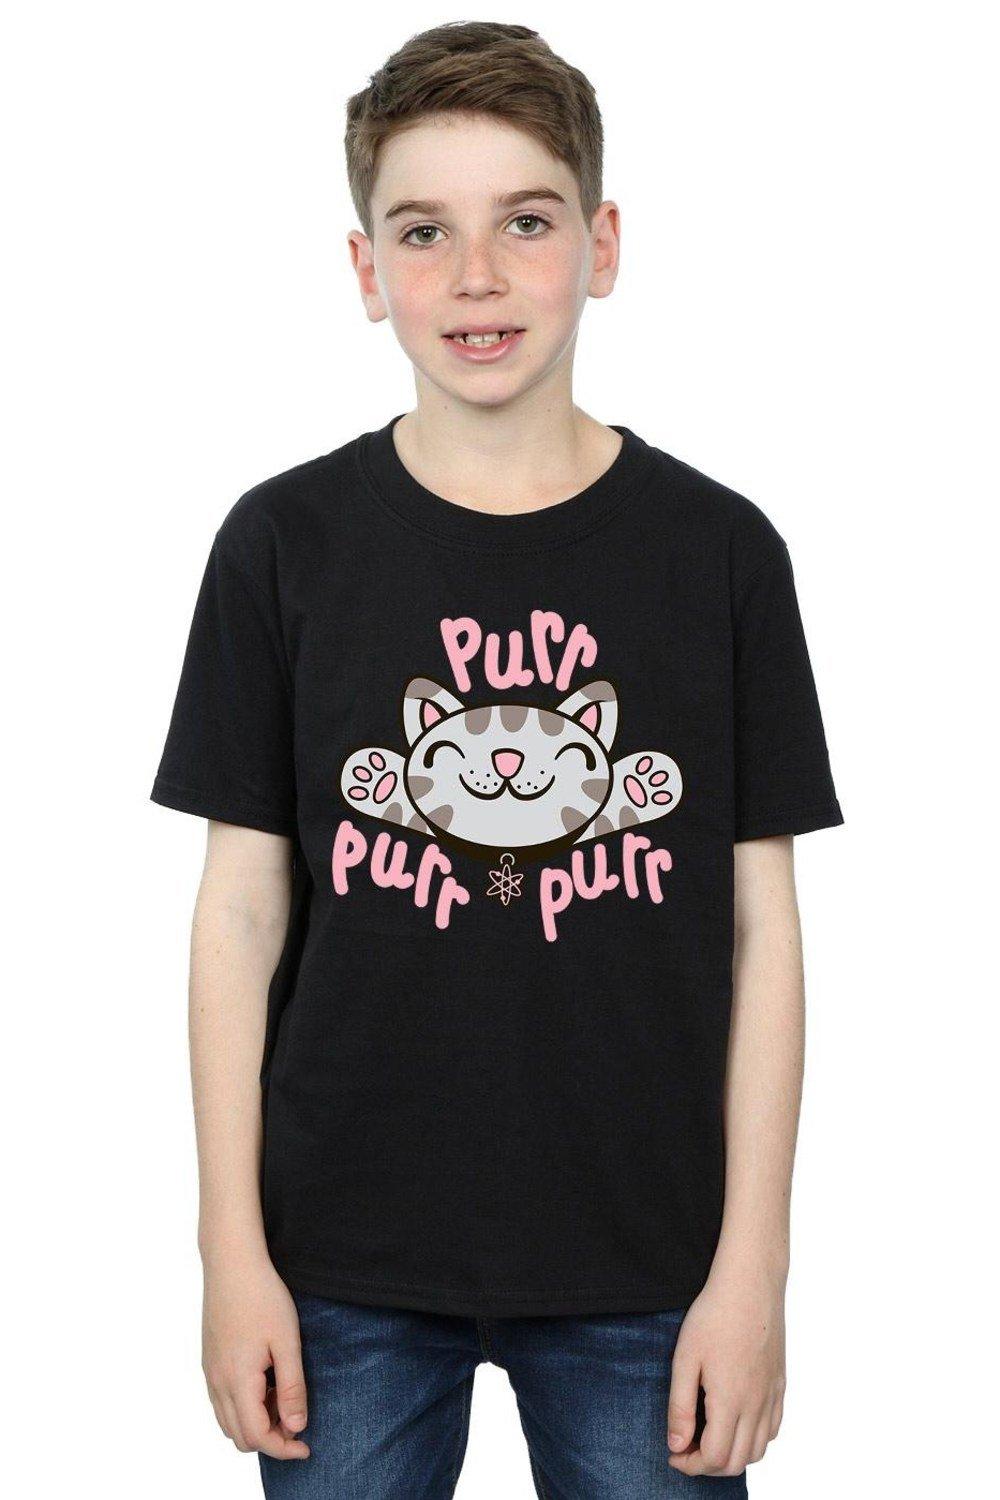 Soft Kitty Purr T-Shirt